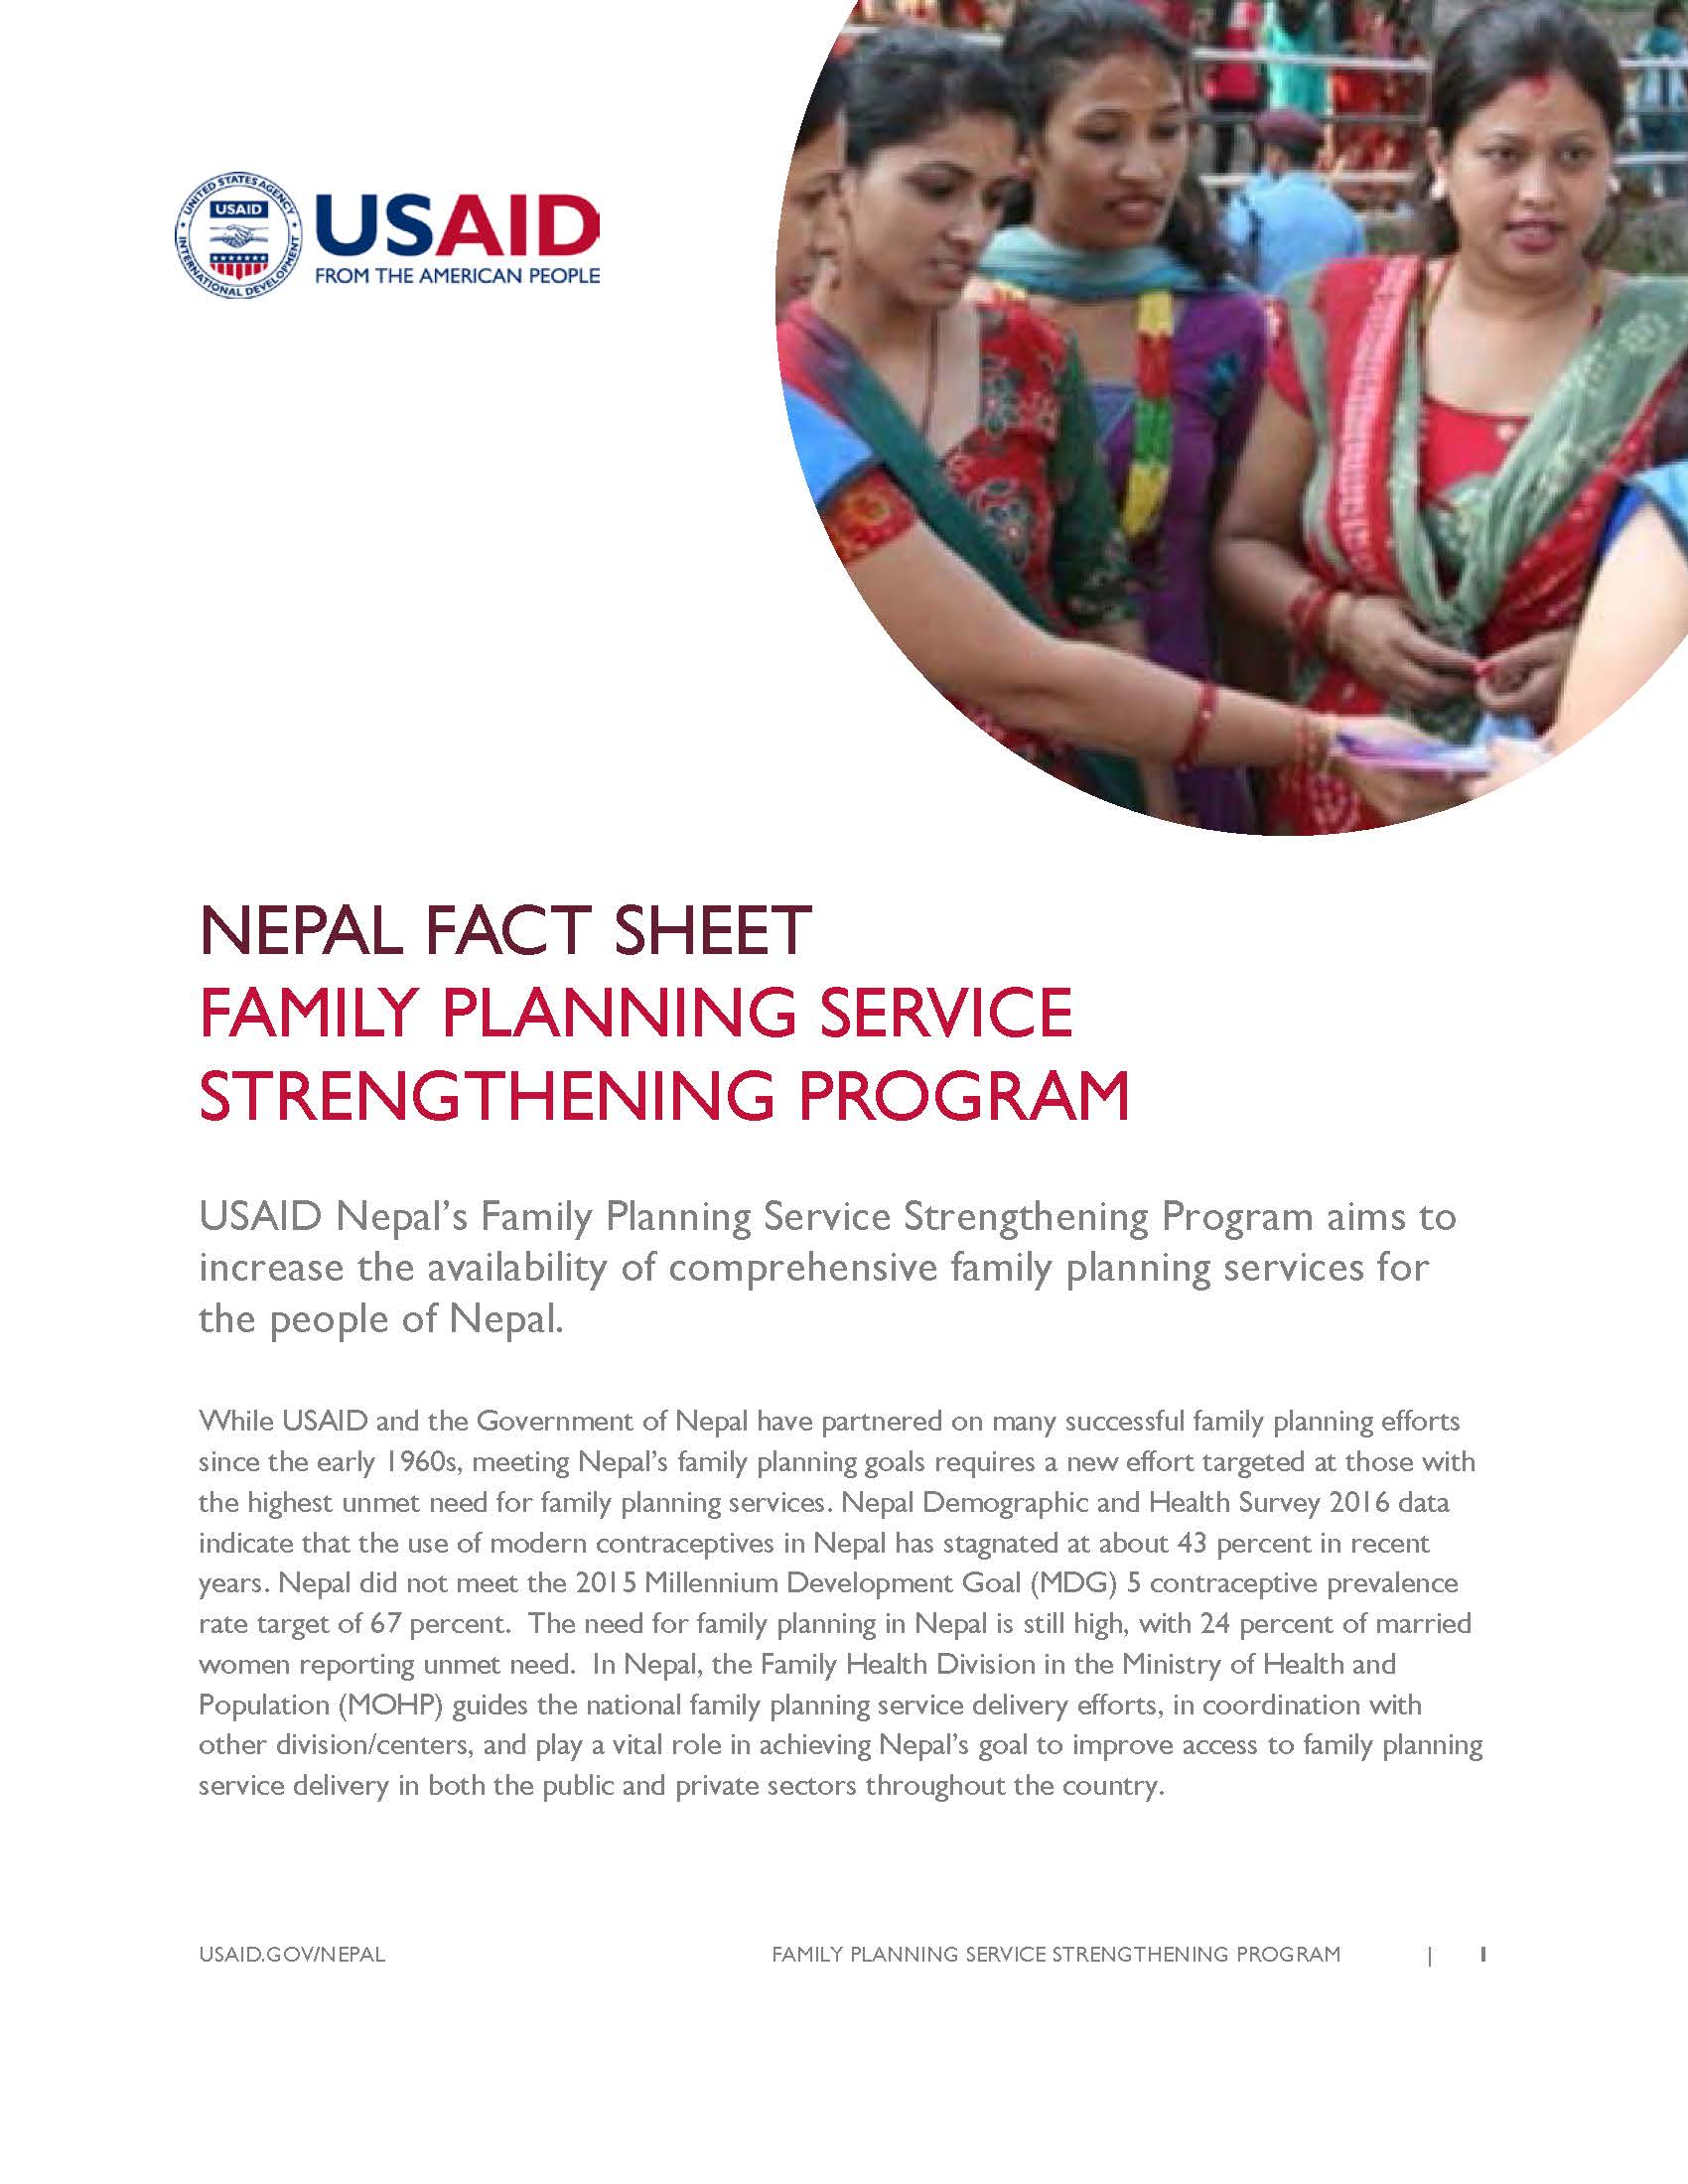 Fact Sheet:FAMILY PLANNING SERVICE STRENGTHENING PROGRAM 